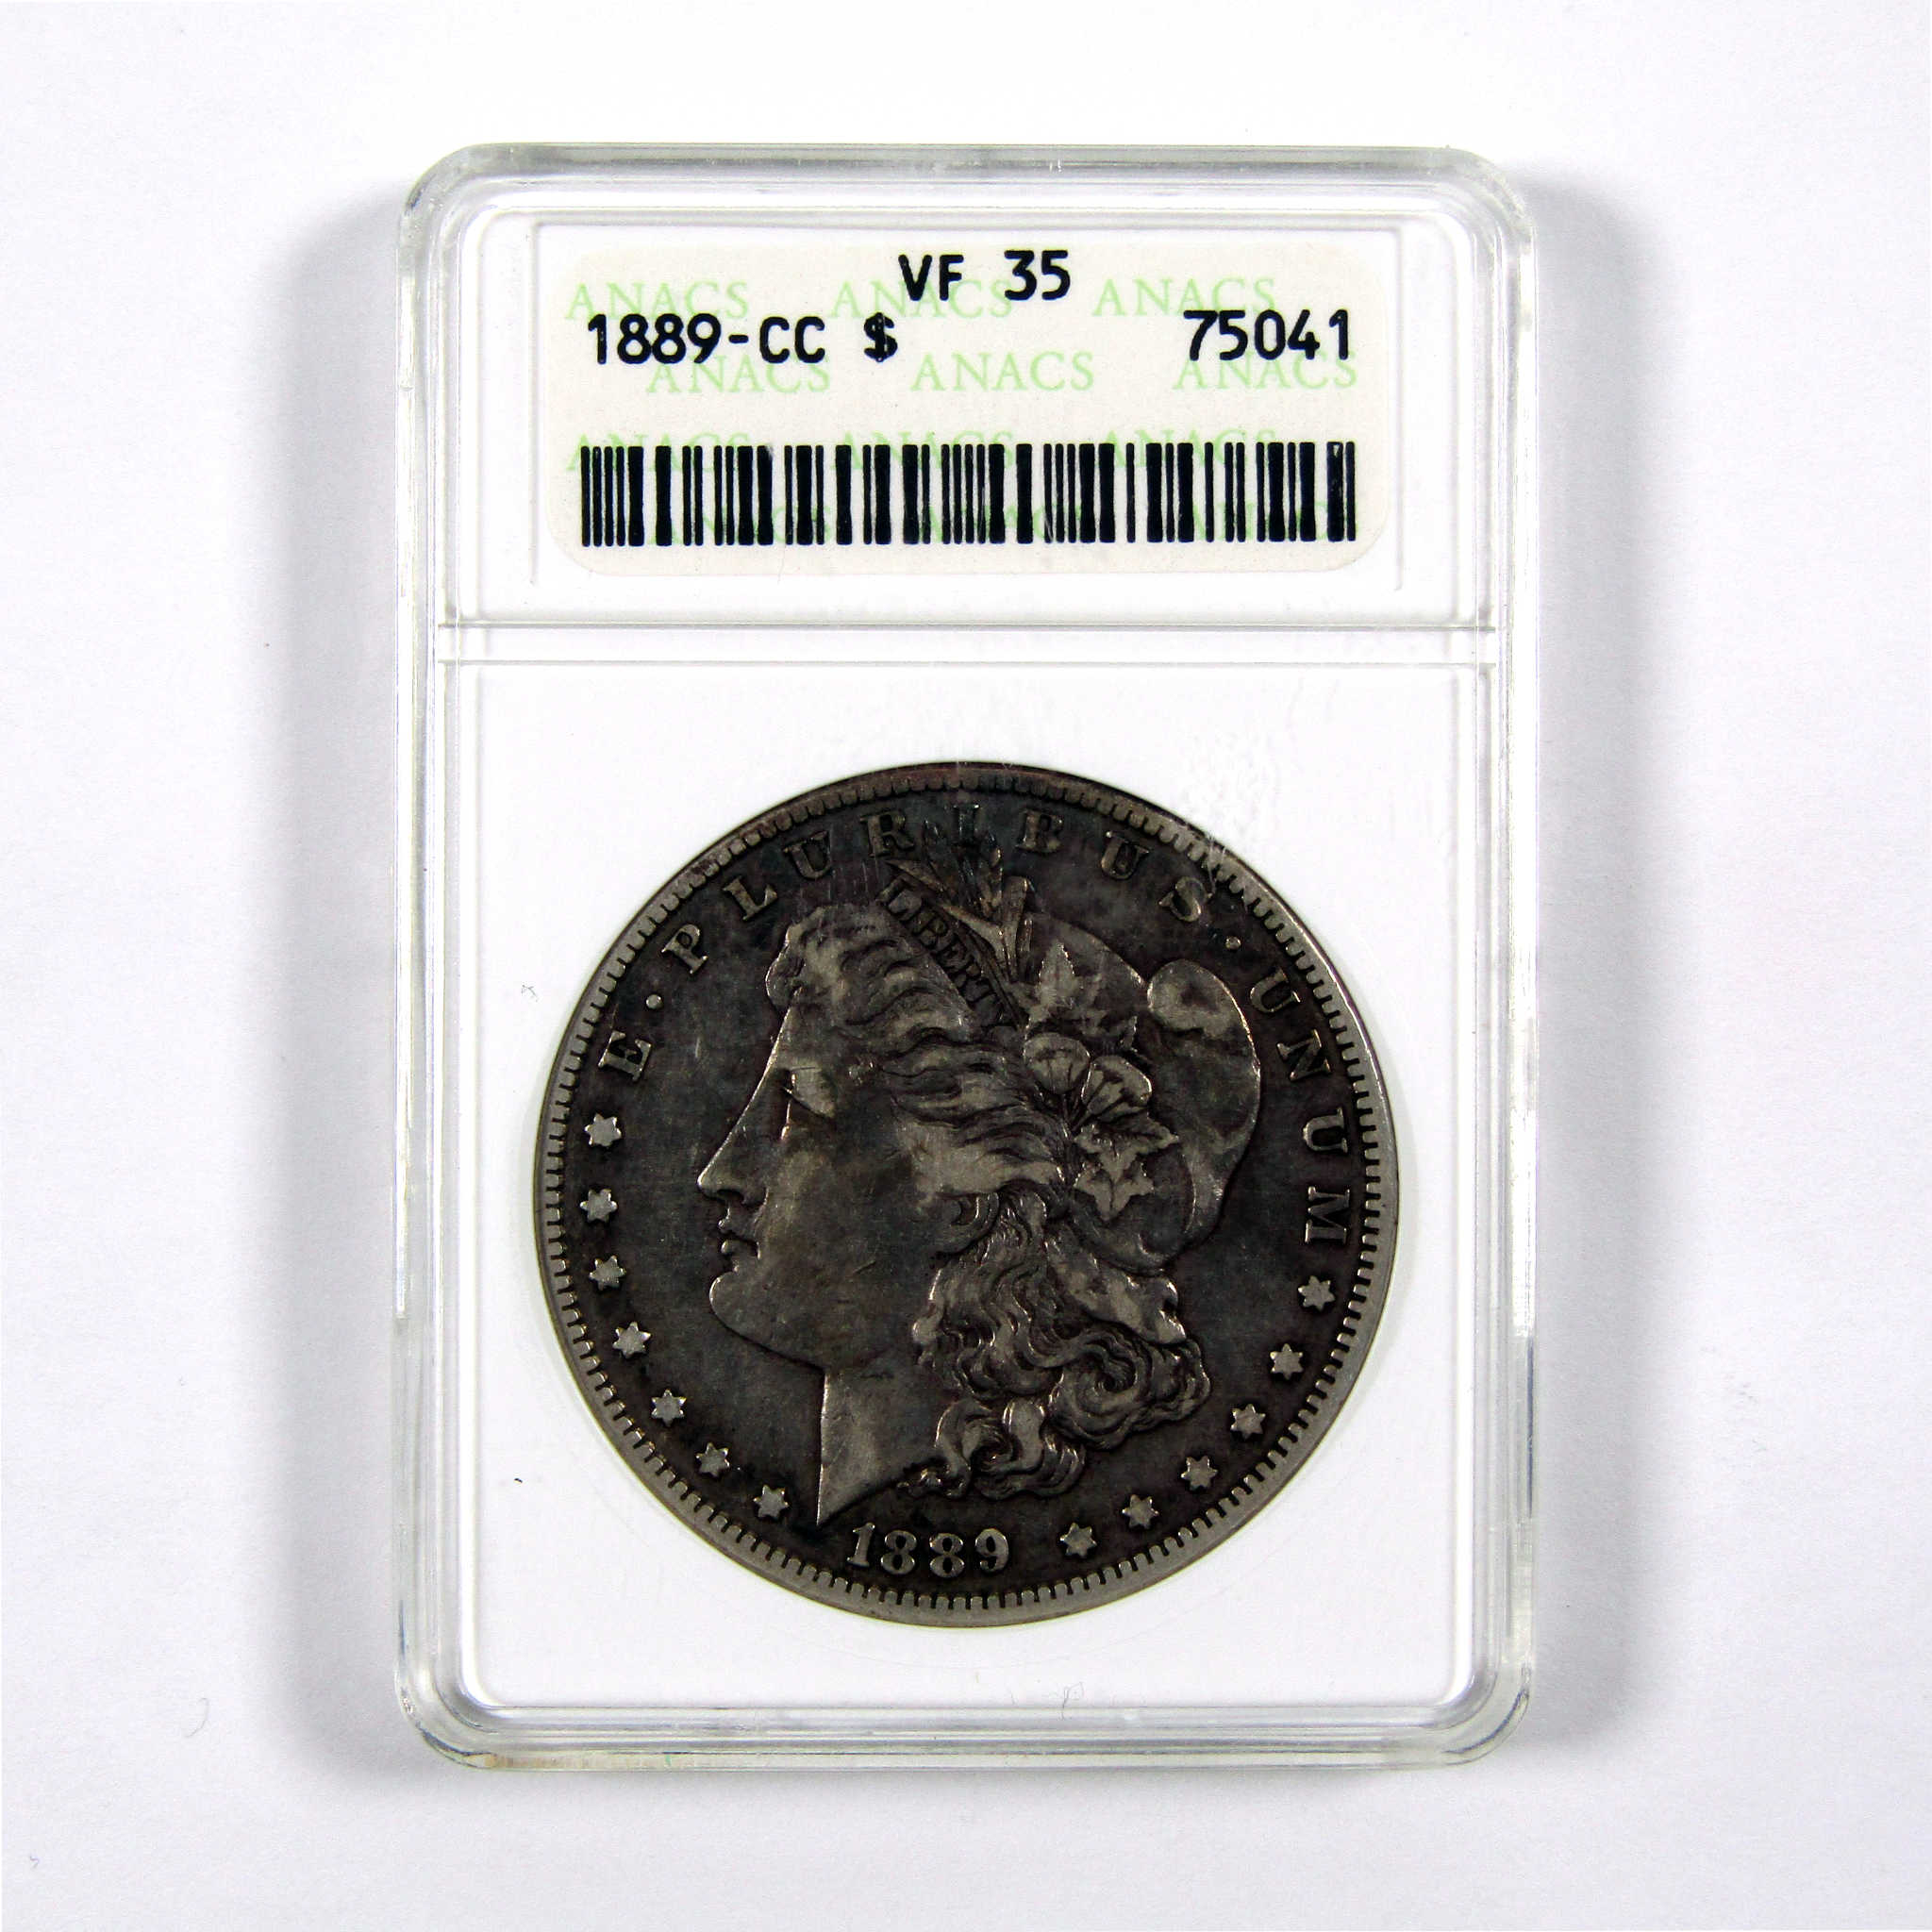 1889 CC Morgan Dollar VF 35 ANACS 90% Silver $1 Coin SKU:I9132 - Morgan coin - Morgan silver dollar - Morgan silver dollar for sale - Profile Coins &amp; Collectibles